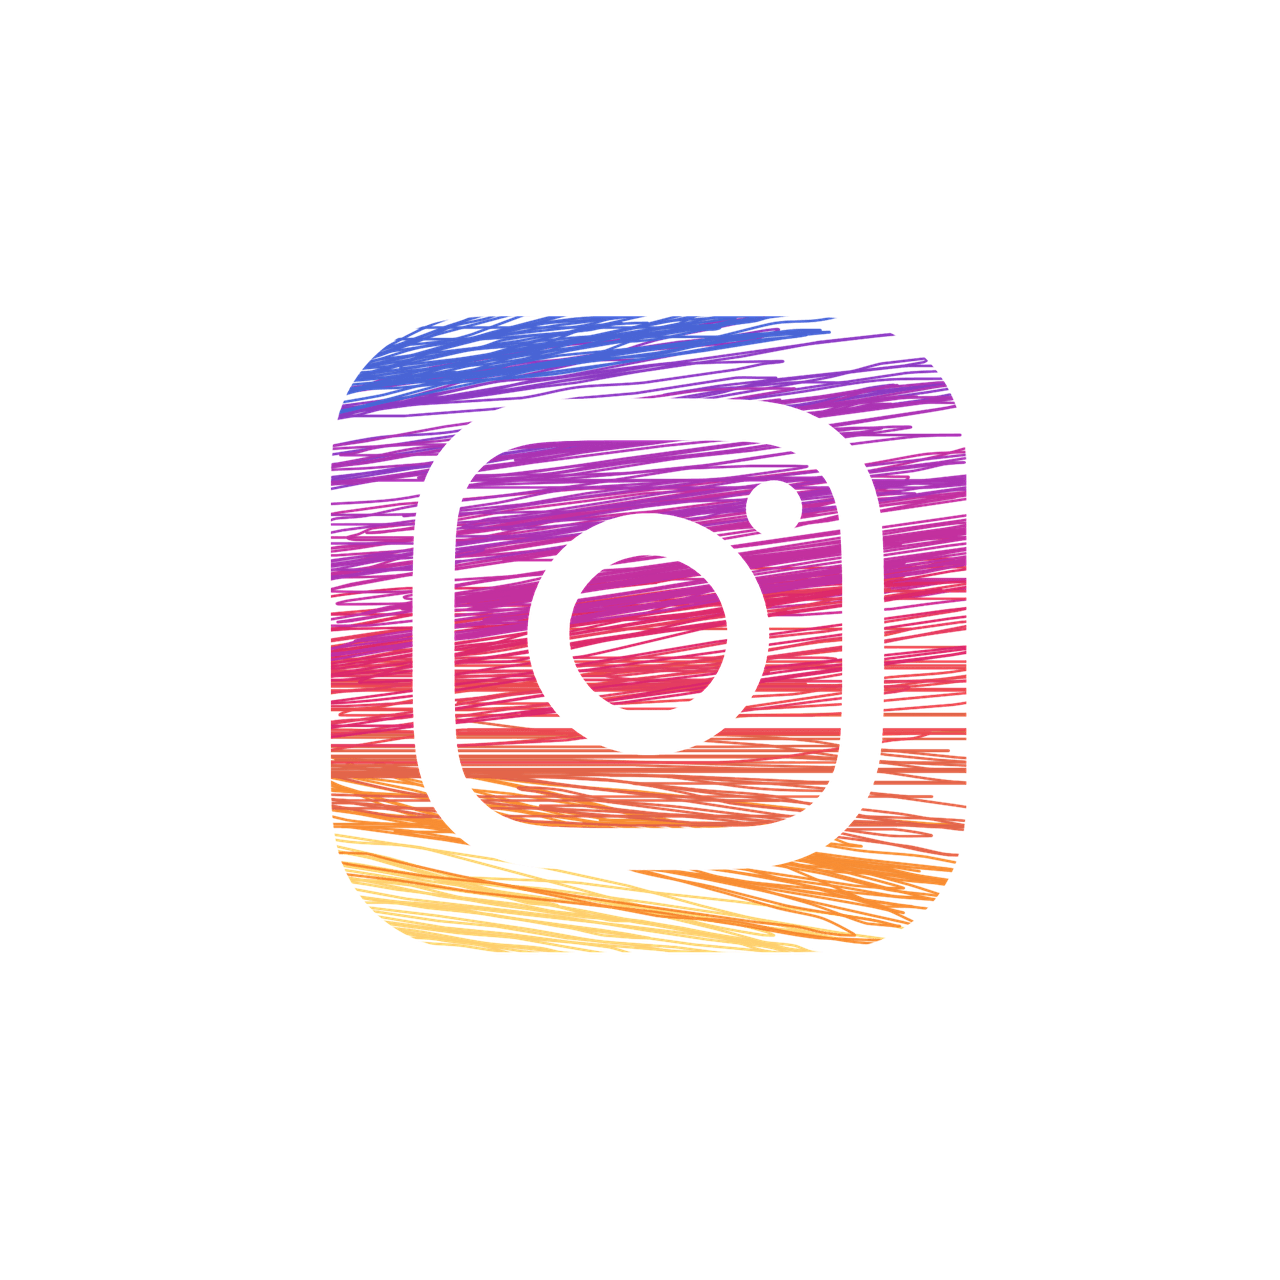 Instagram wird der nächste große Marktplatz im Rahmen der Digitalisierung